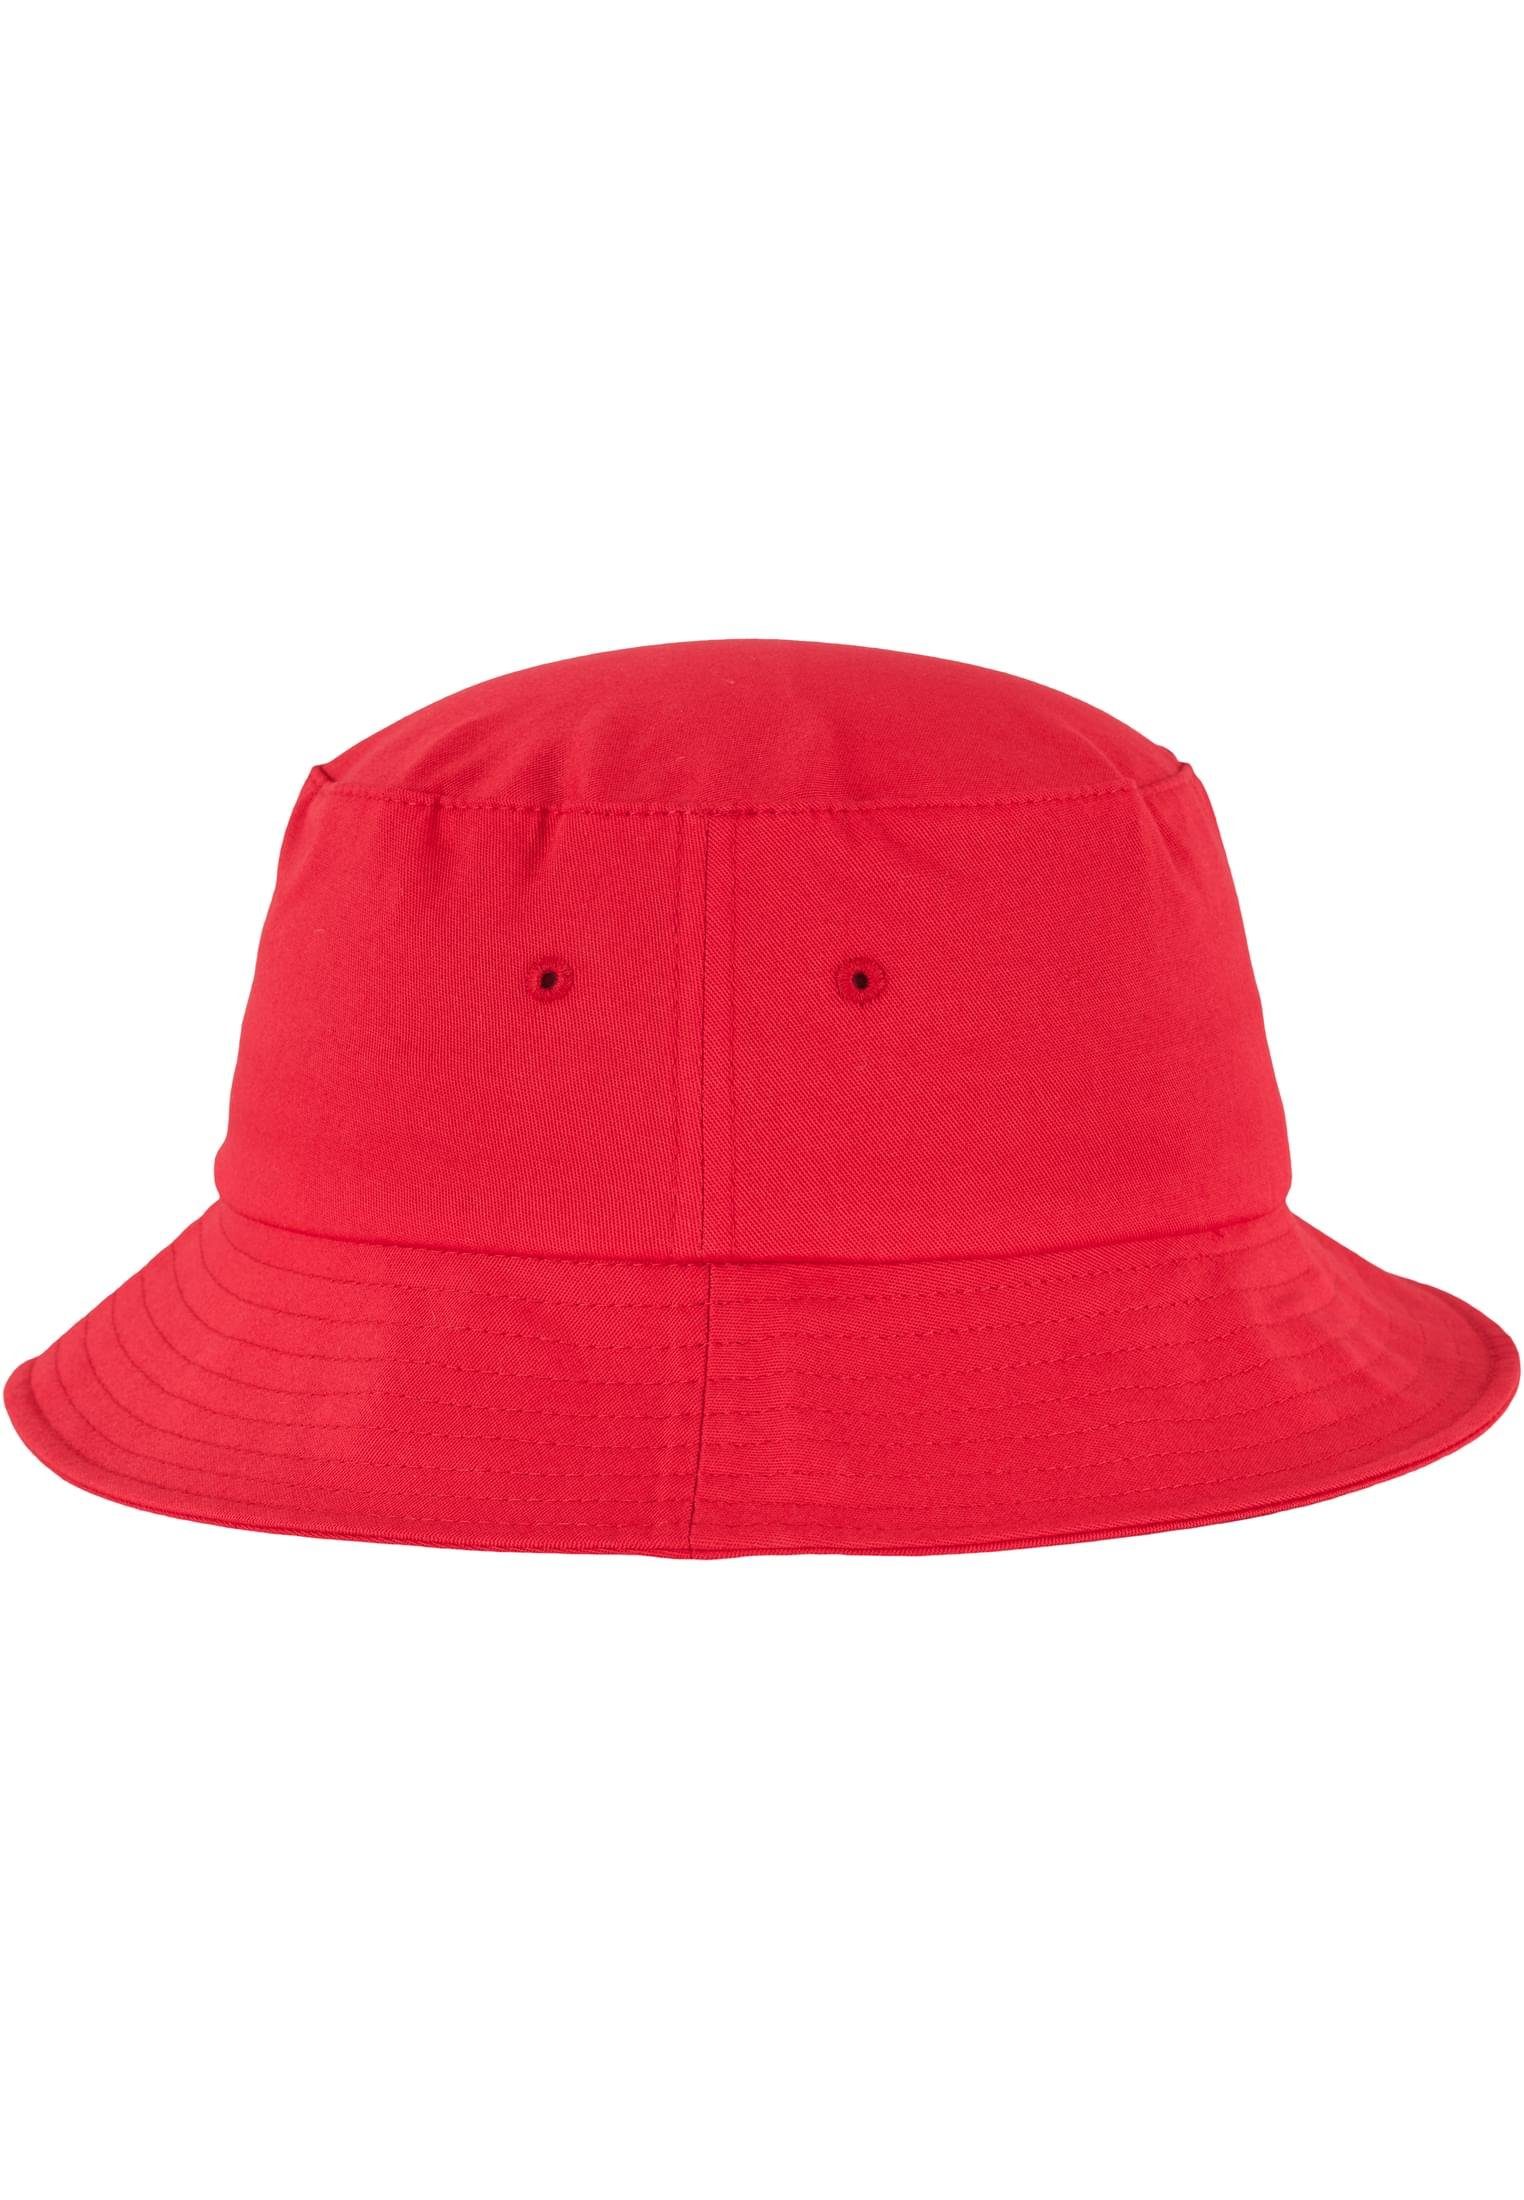 Flexfit Flex Cap Hat Bucket Cotton red Twill Accessoires Flexfit